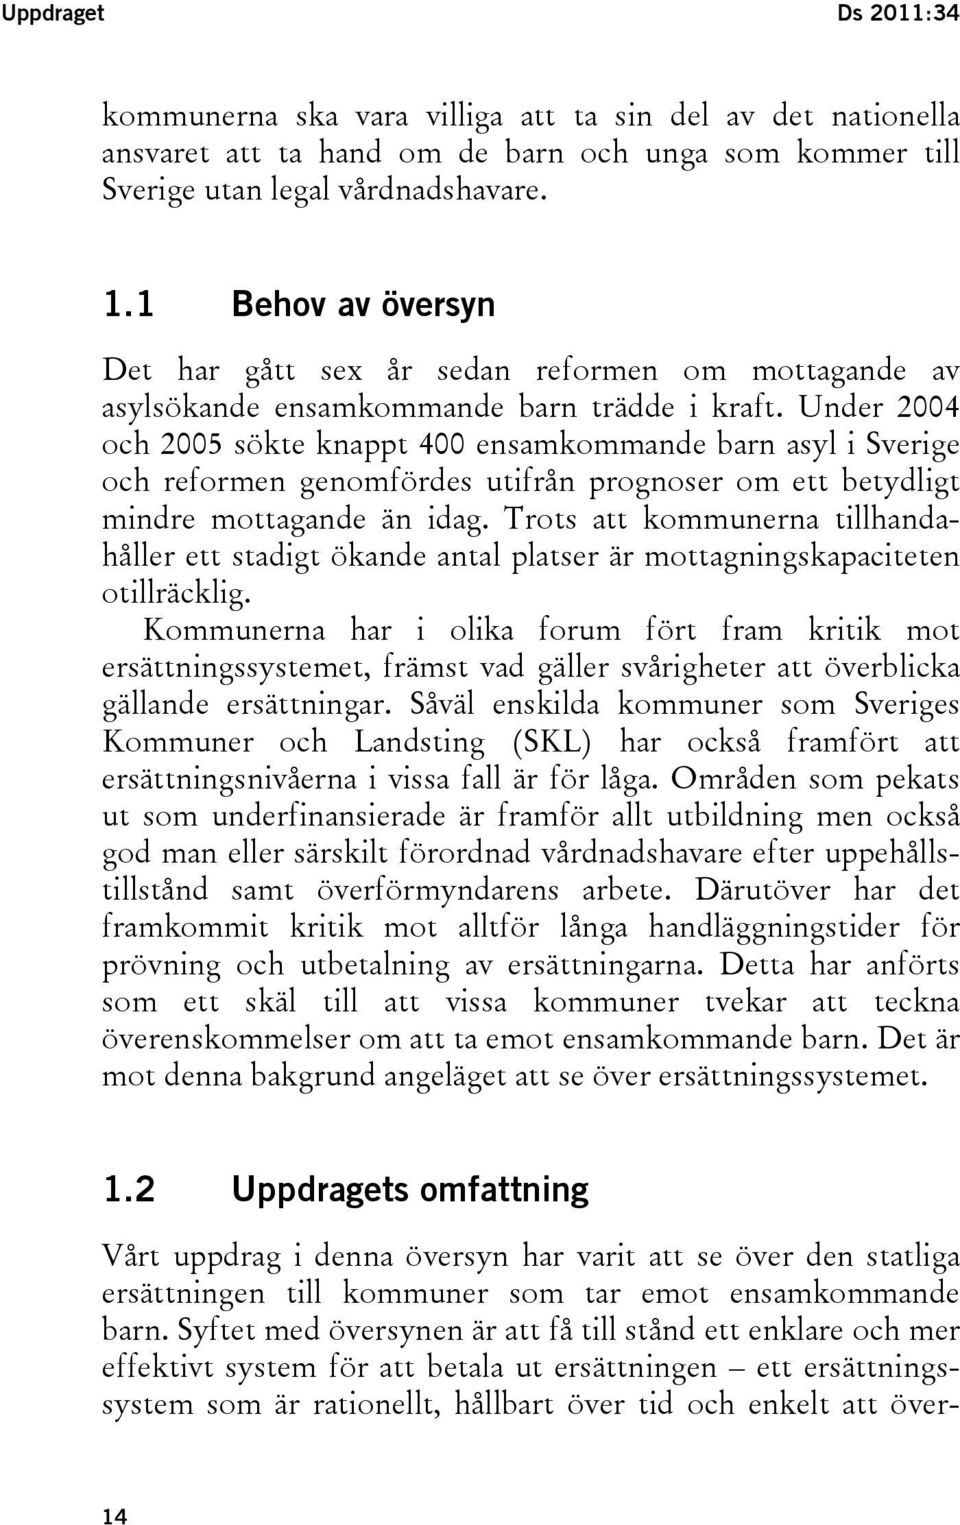 Under 2004 och 2005 sökte knappt 400 ensamkommande barn asyl i Sverige och reformen genomfördes utifrån prognoser om ett betydligt mindre mottagande än idag.